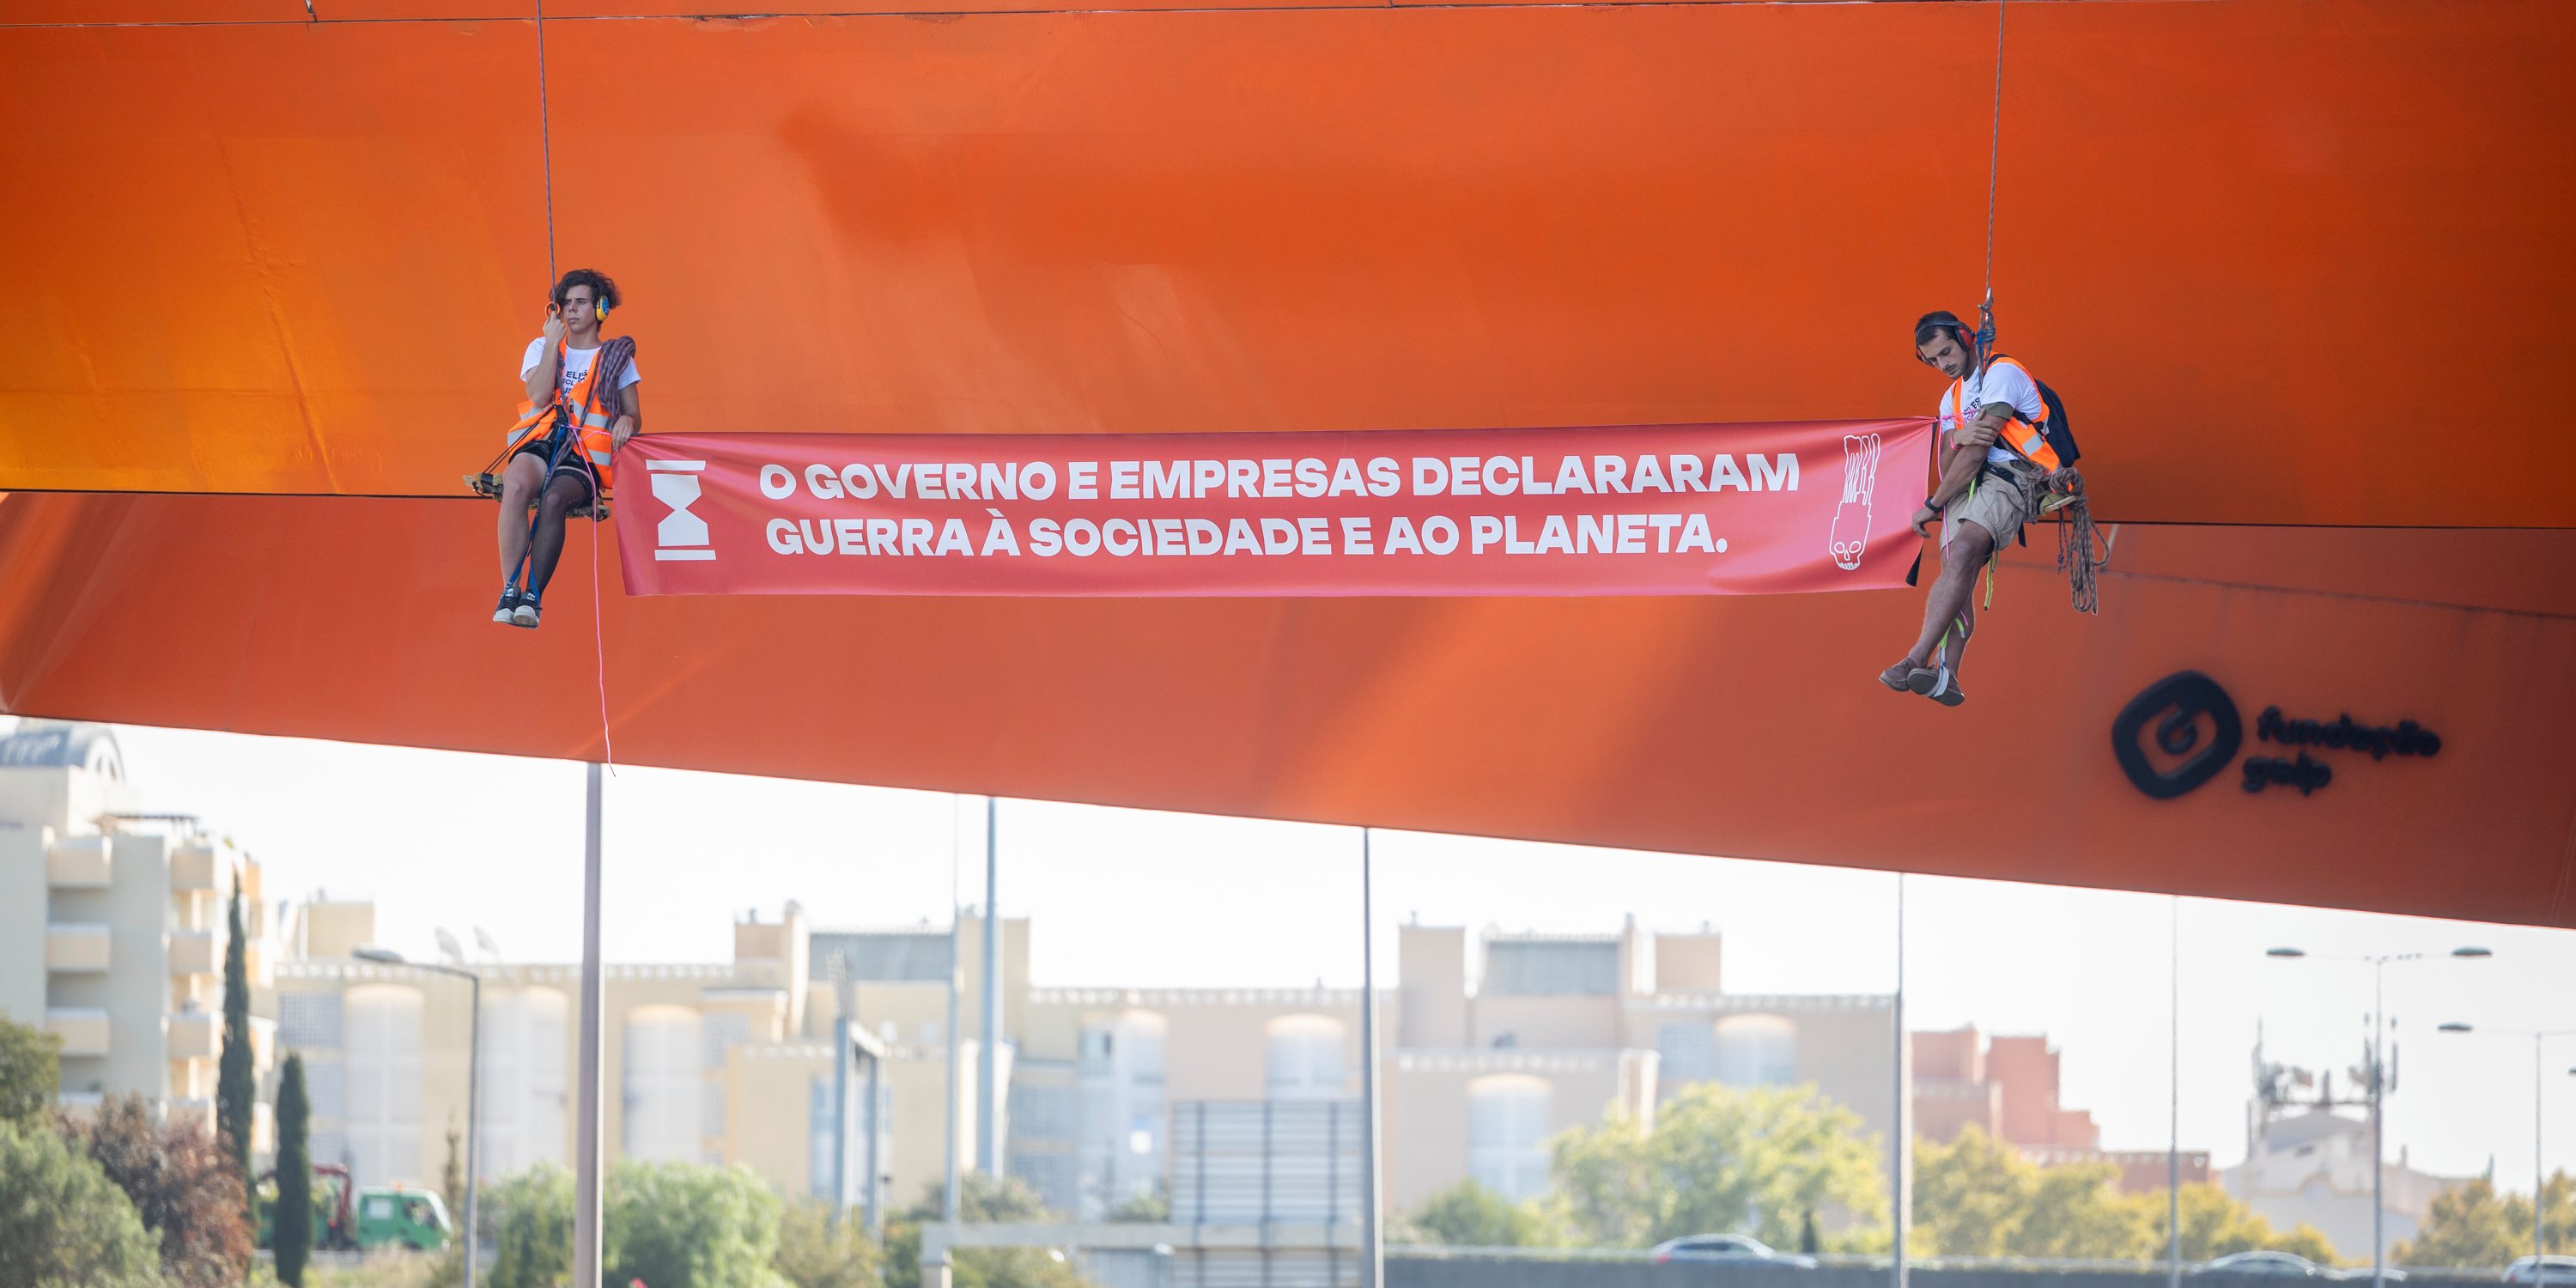 Um grupo de manifestantes bloqueou esta terça-feira a 2ª Circular, em Lisboa, num protesto contra &quot;o Governo e empresas&quot;